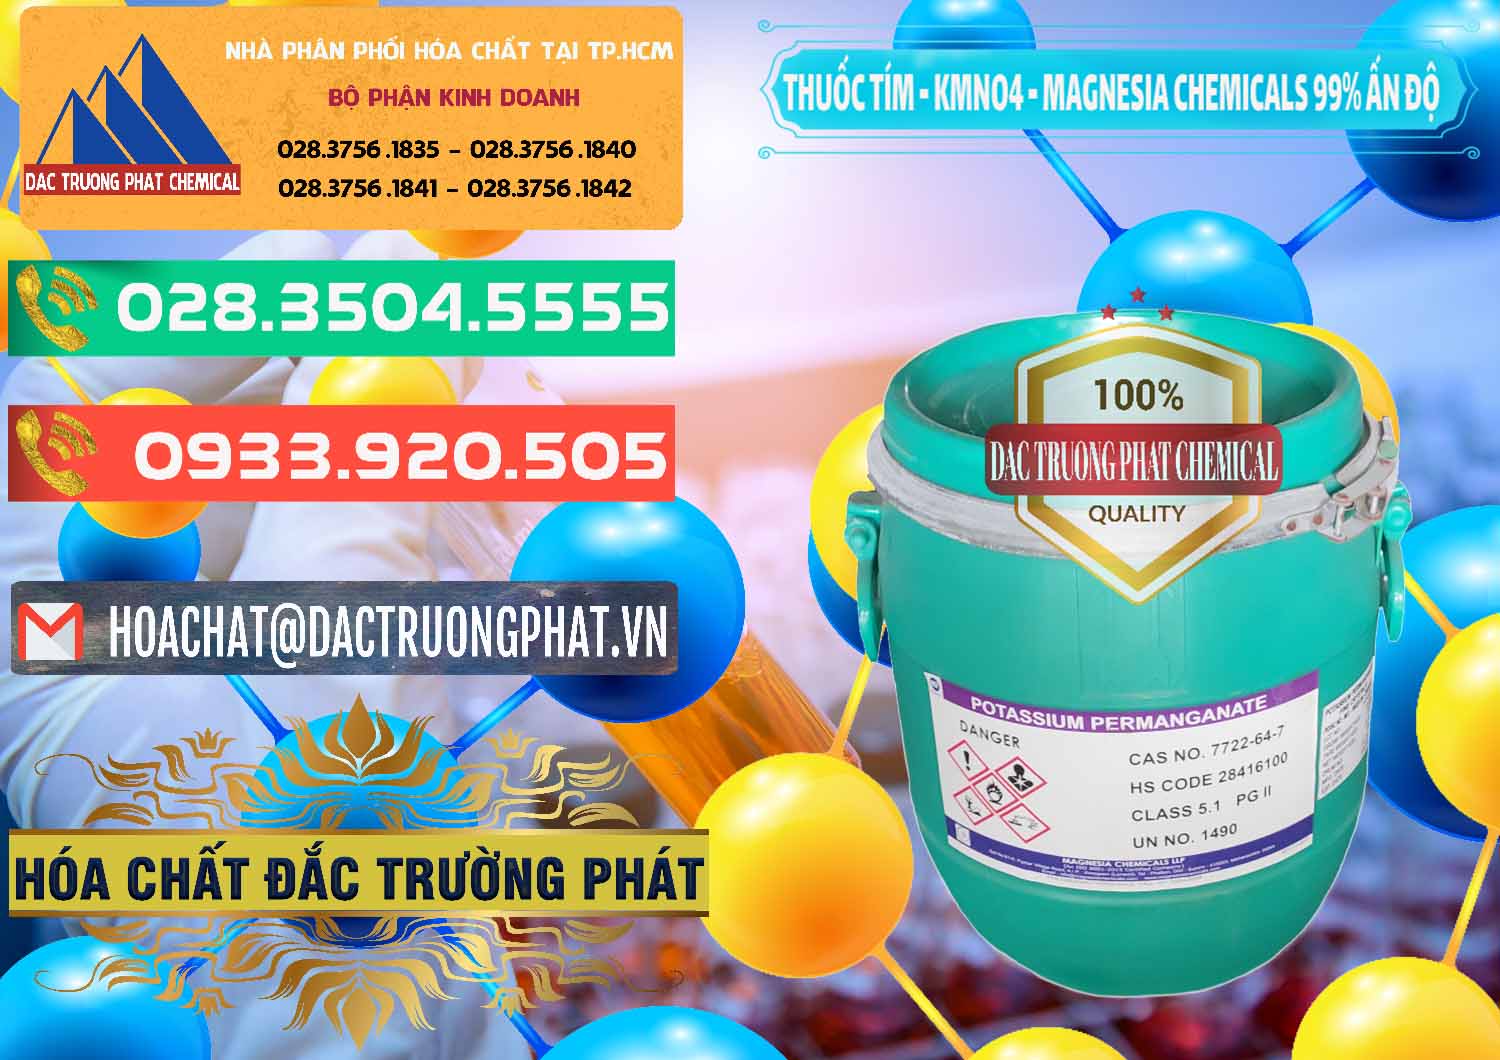 Công ty chuyên bán _ cung cấp Thuốc Tím - KMNO4 Magnesia Chemicals 99% Ấn Độ India - 0251 - Công ty nhập khẩu _ cung cấp hóa chất tại TP.HCM - congtyhoachat.com.vn